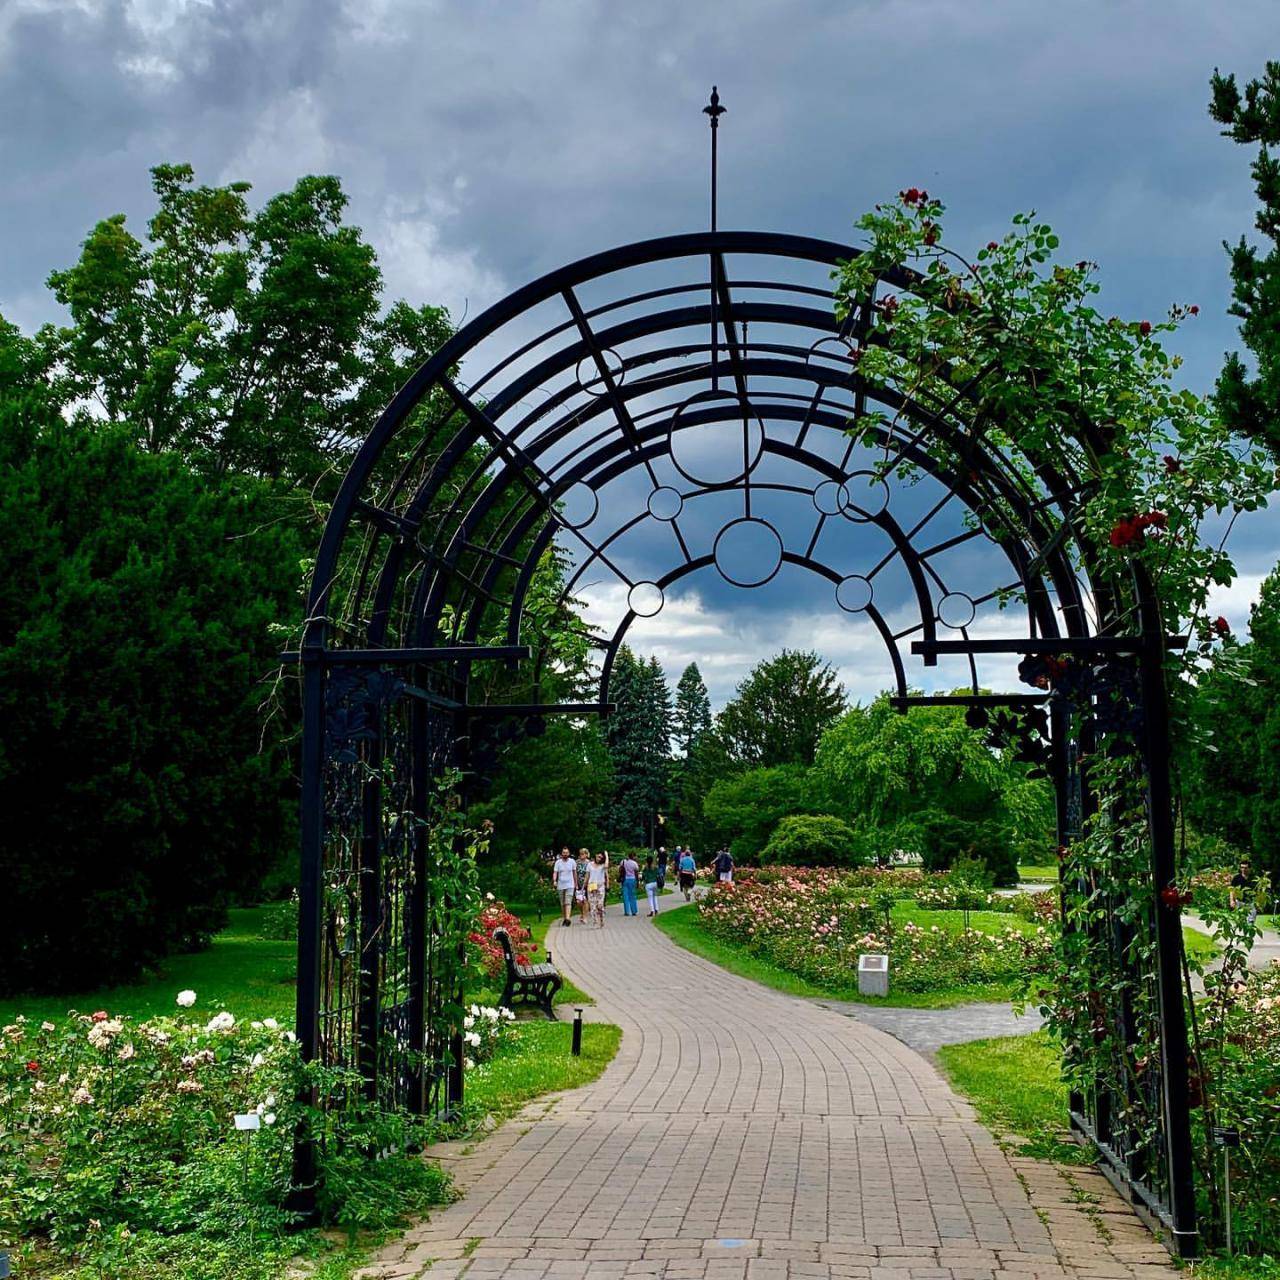 زیباترین باغ گیاه شناسی در مونترال را بشناسید + تصاویر